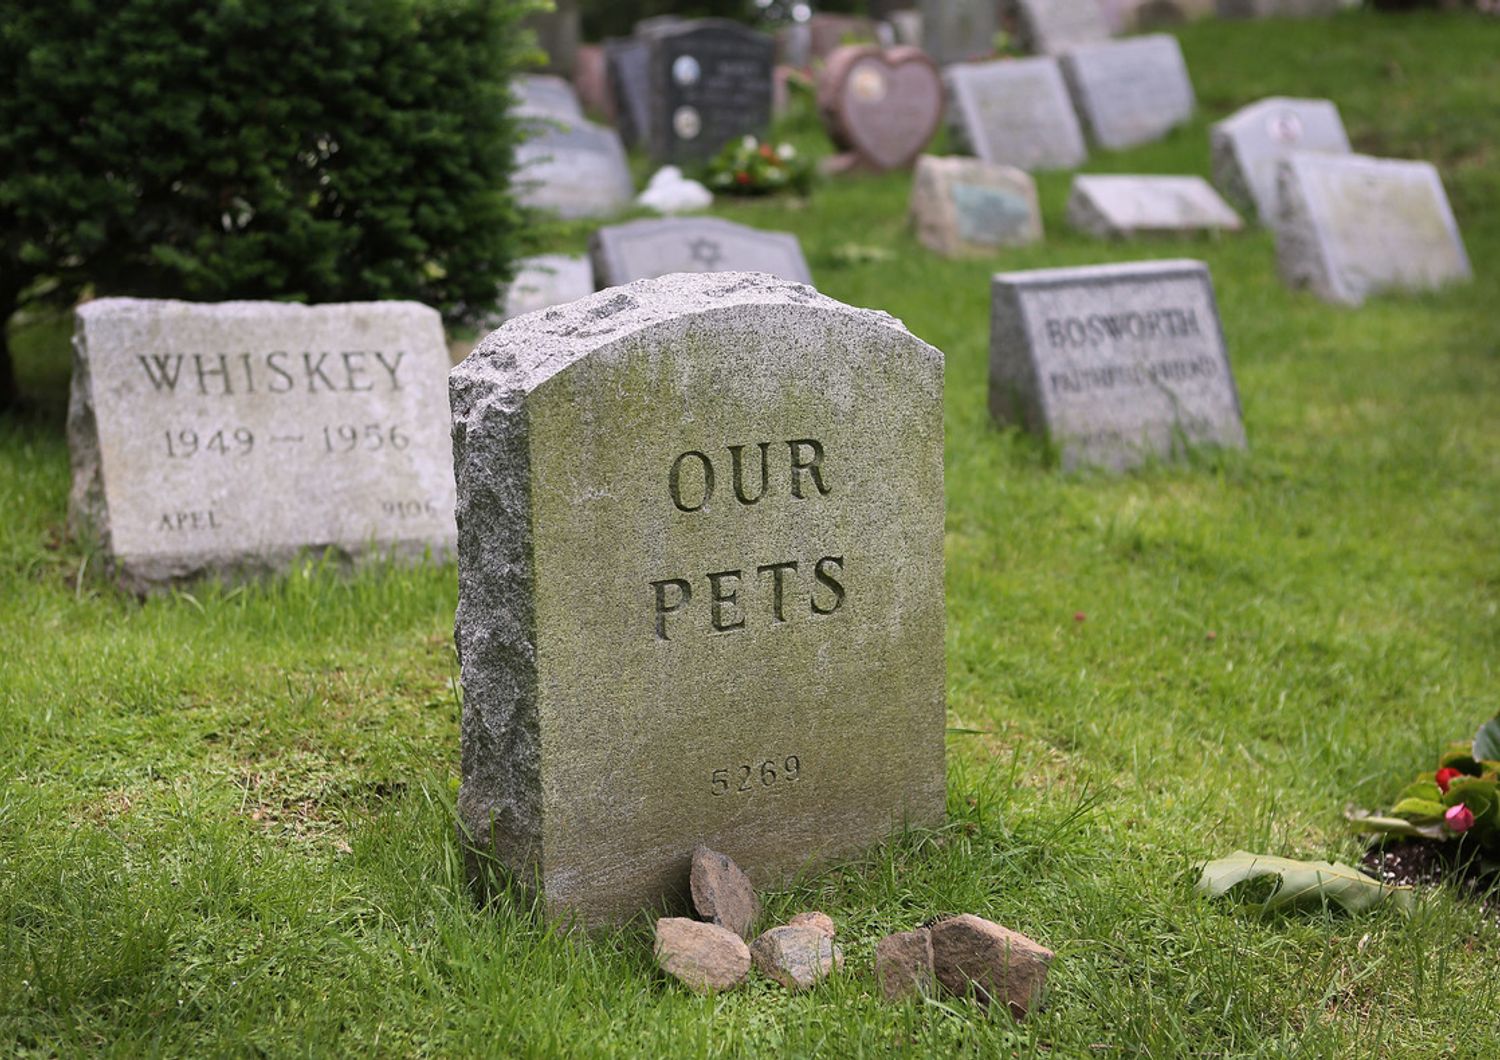 Pet cemetery